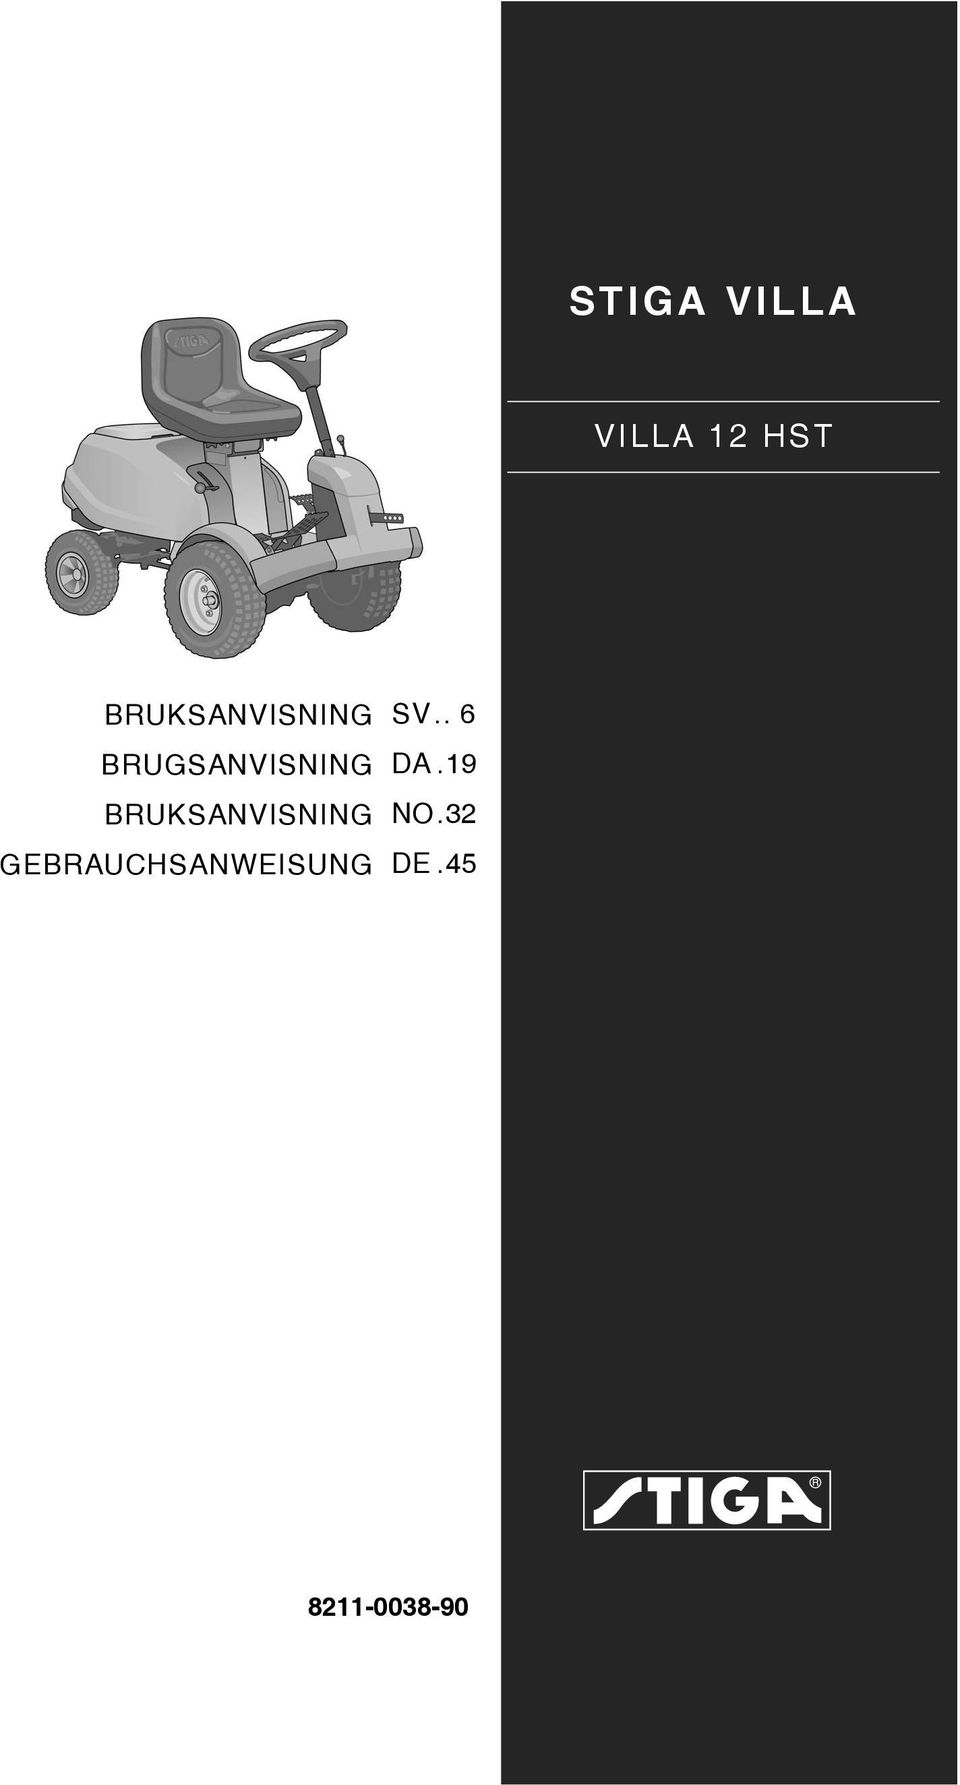 STIGA VILLA VILLA 12 HST SV.. 6 DA.19 NO.32 DE.45 BRUKSANVISNING  BRUGSANVISNING BRUKSANVISNING GEBRAUCHSANWEISUNG - PDF Gratis nedladdning